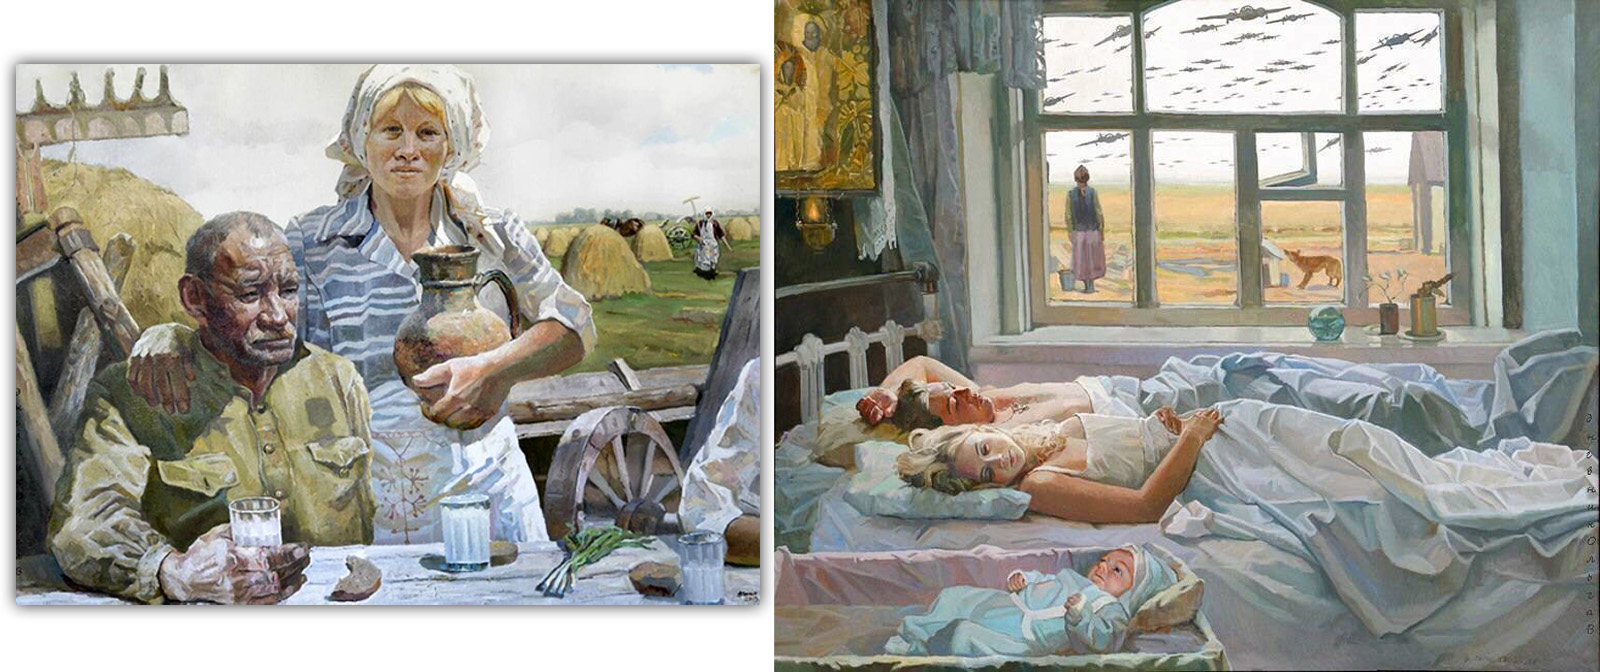 Неоднозначная картина Валентина Папко, в которой он допустил немало  откровенных ляпов. Где грань между китчем и творческим видением художника в  искусстве?